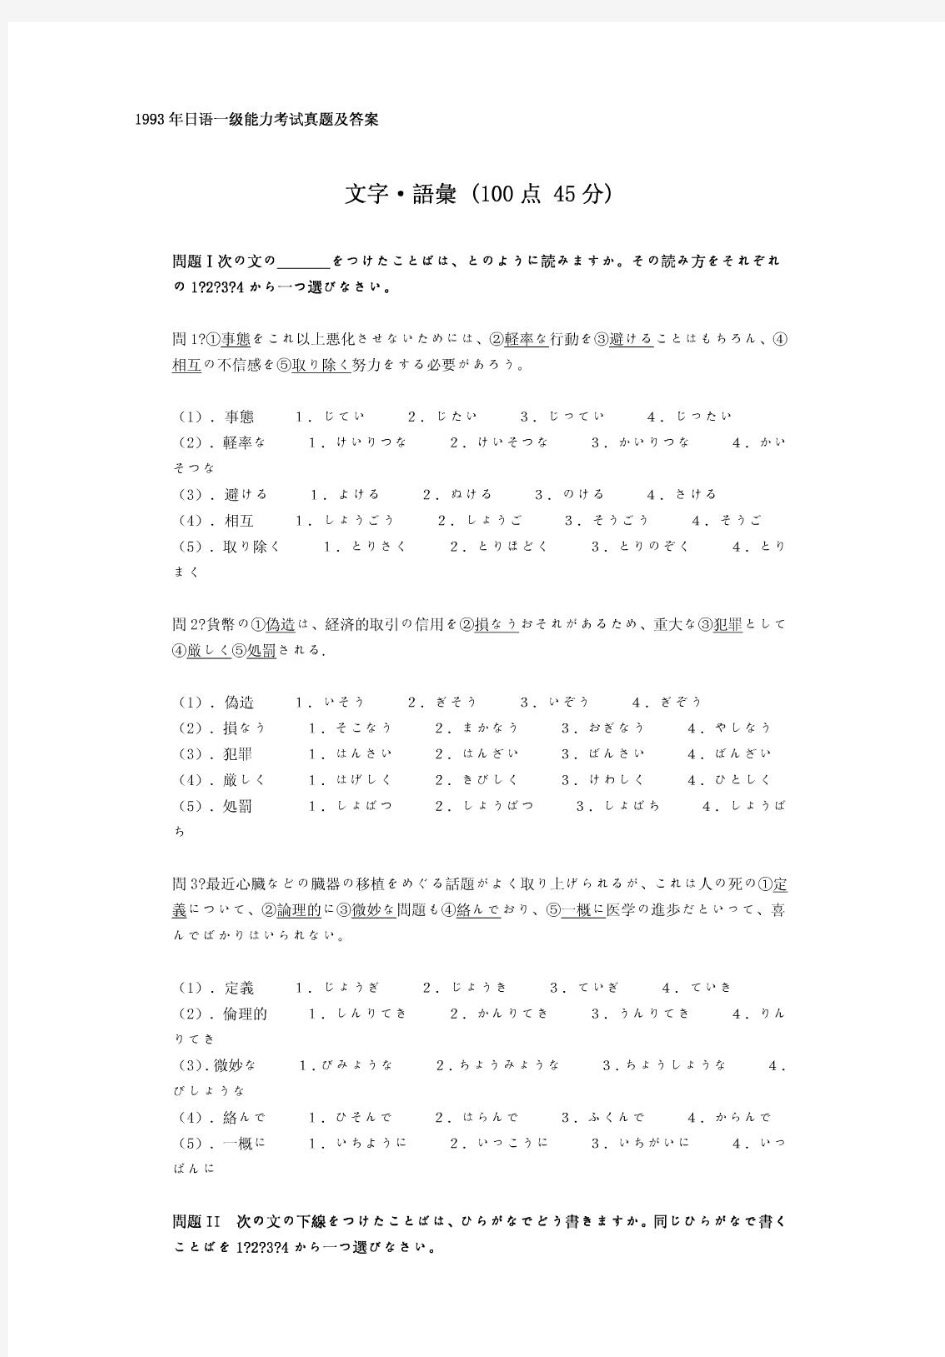 【日语能力考试1级真题及备考资料】日语一级-1993年日语能力考试一级真题清晰